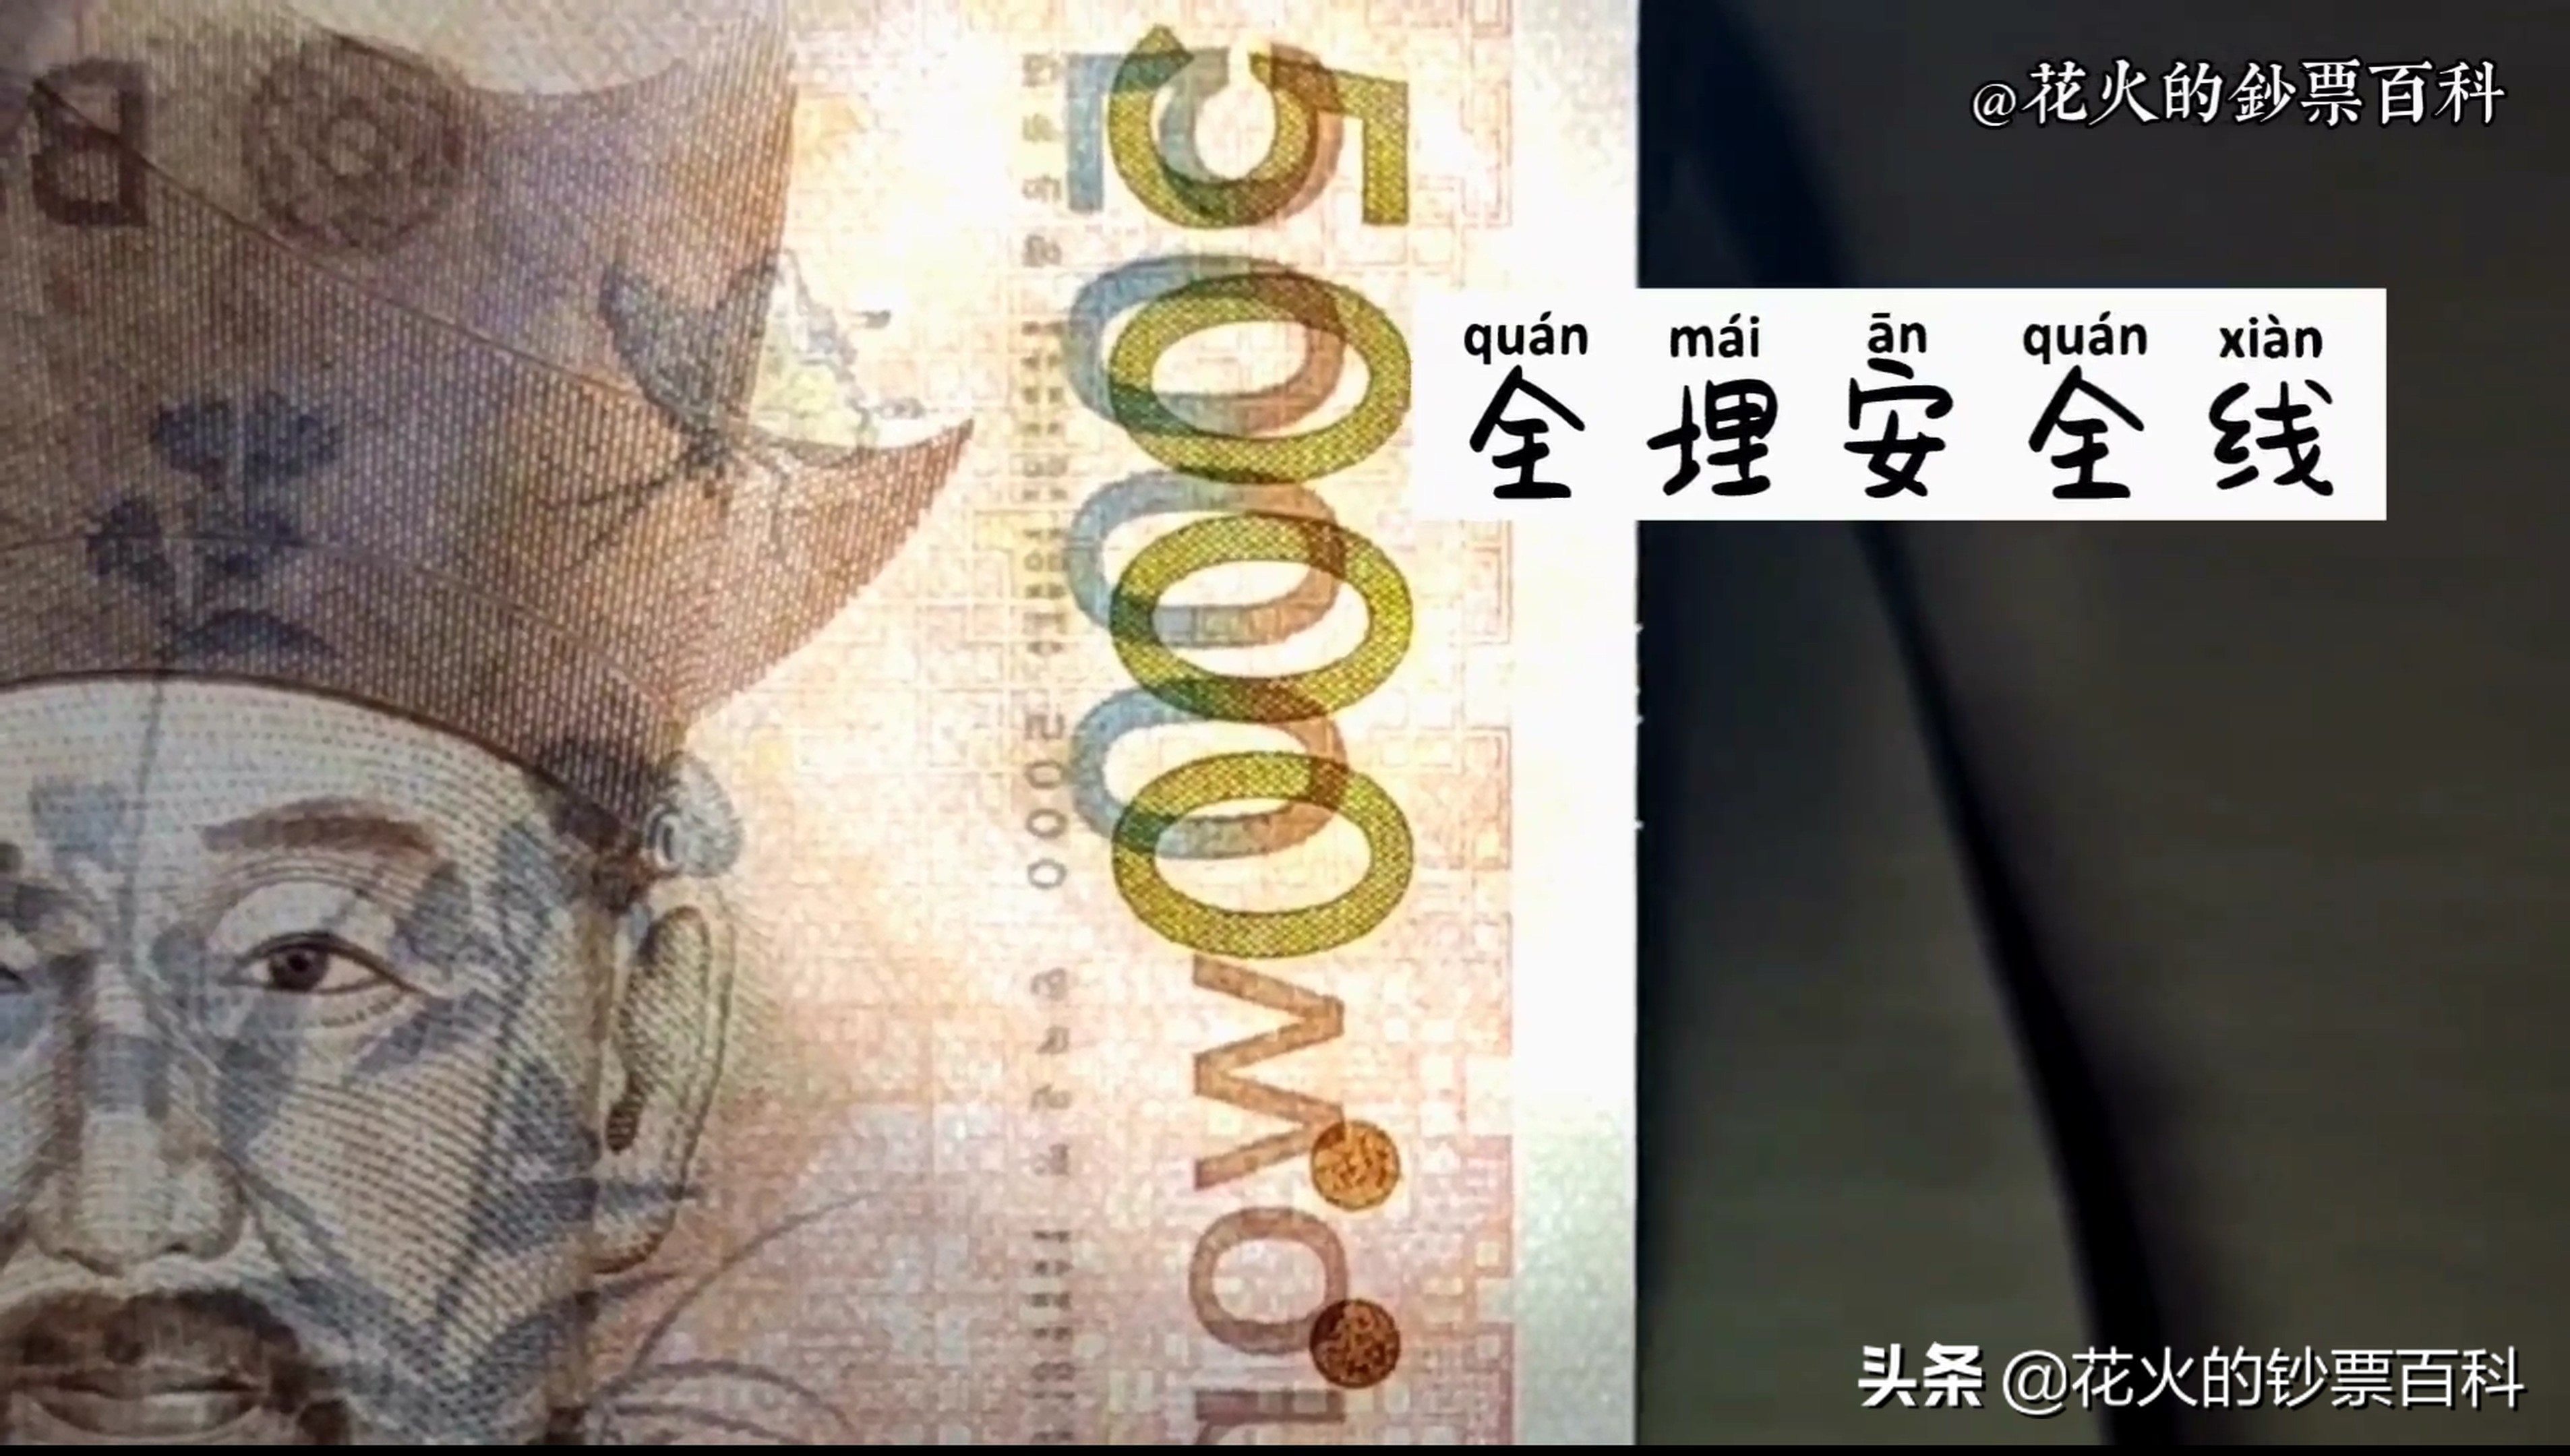 5000韩元等于多少人民币韩币汇率走势分析